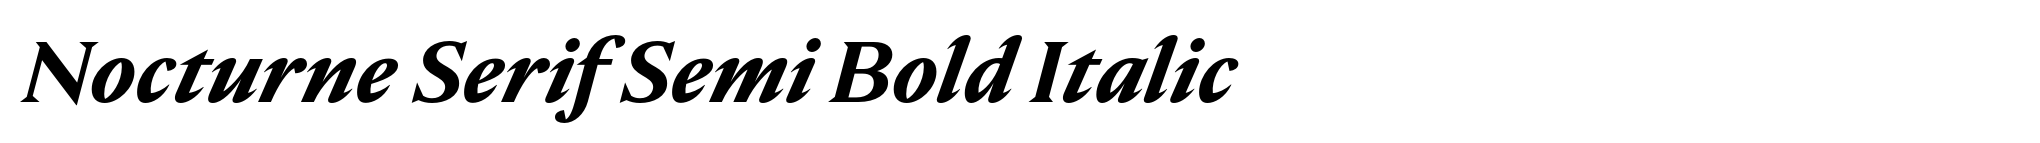 Nocturne Serif Semi Bold Italic image